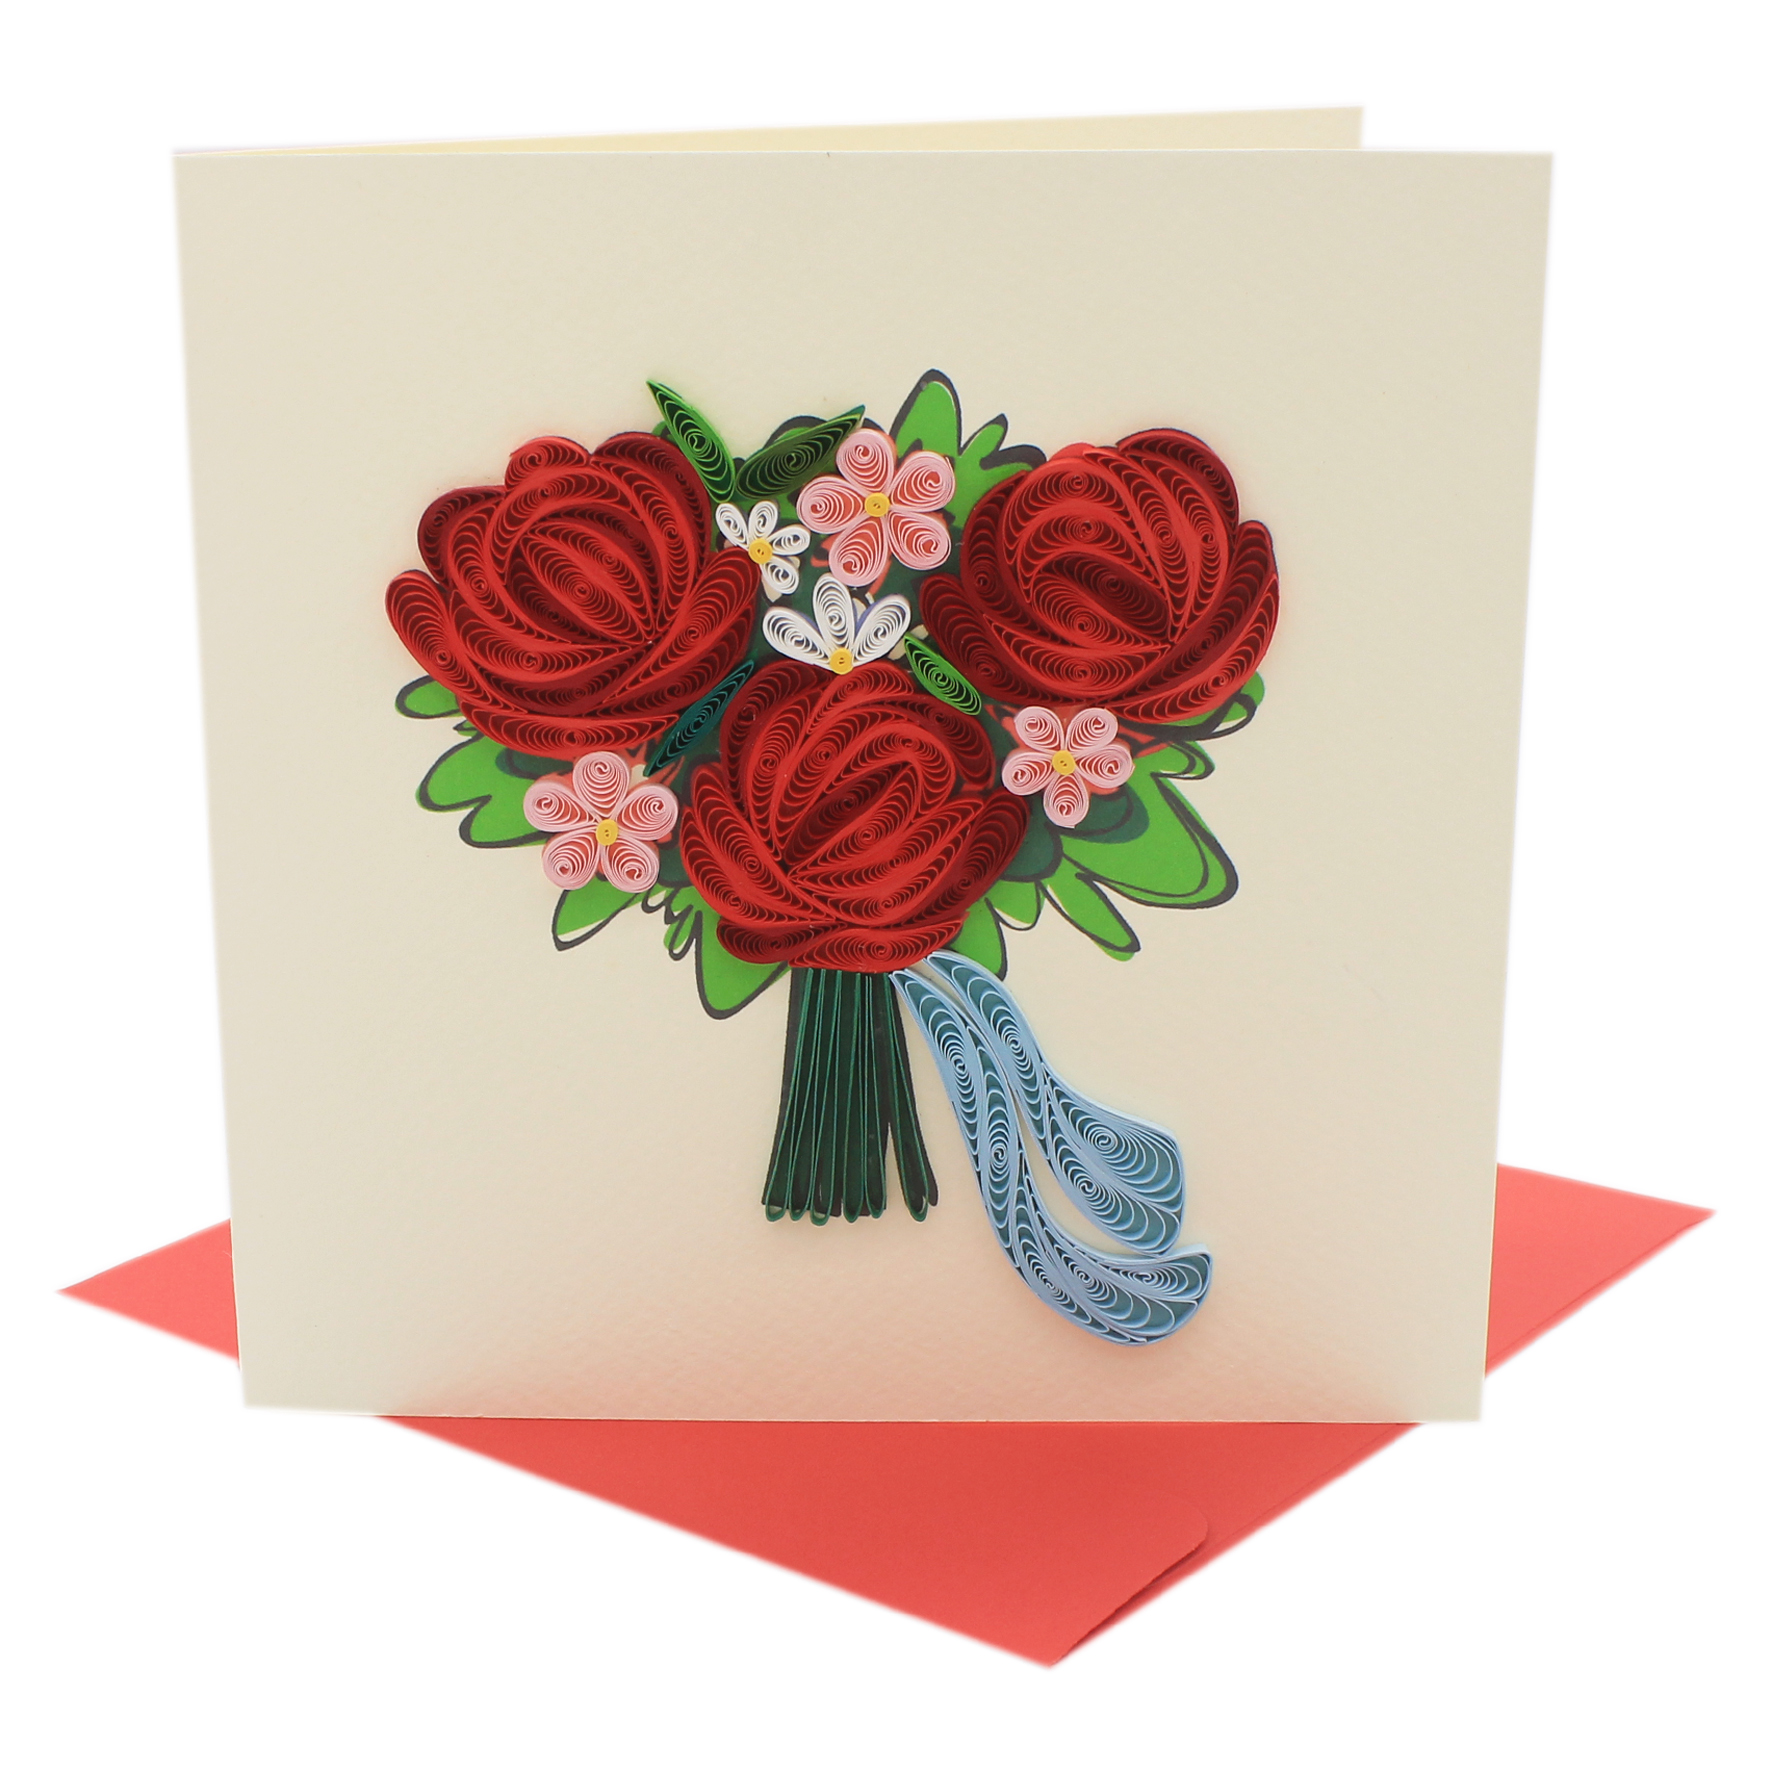 Thiệp Handmade - Thiệp Bó hoa hồng nghệ thuật giấy xoắn (Quilling Card) - Tặng Kèm Khung Giấy Để Bàn - Thiệp chúc mừng sinh nhật, kỷ niệm, tình yêu, cảm ơn...